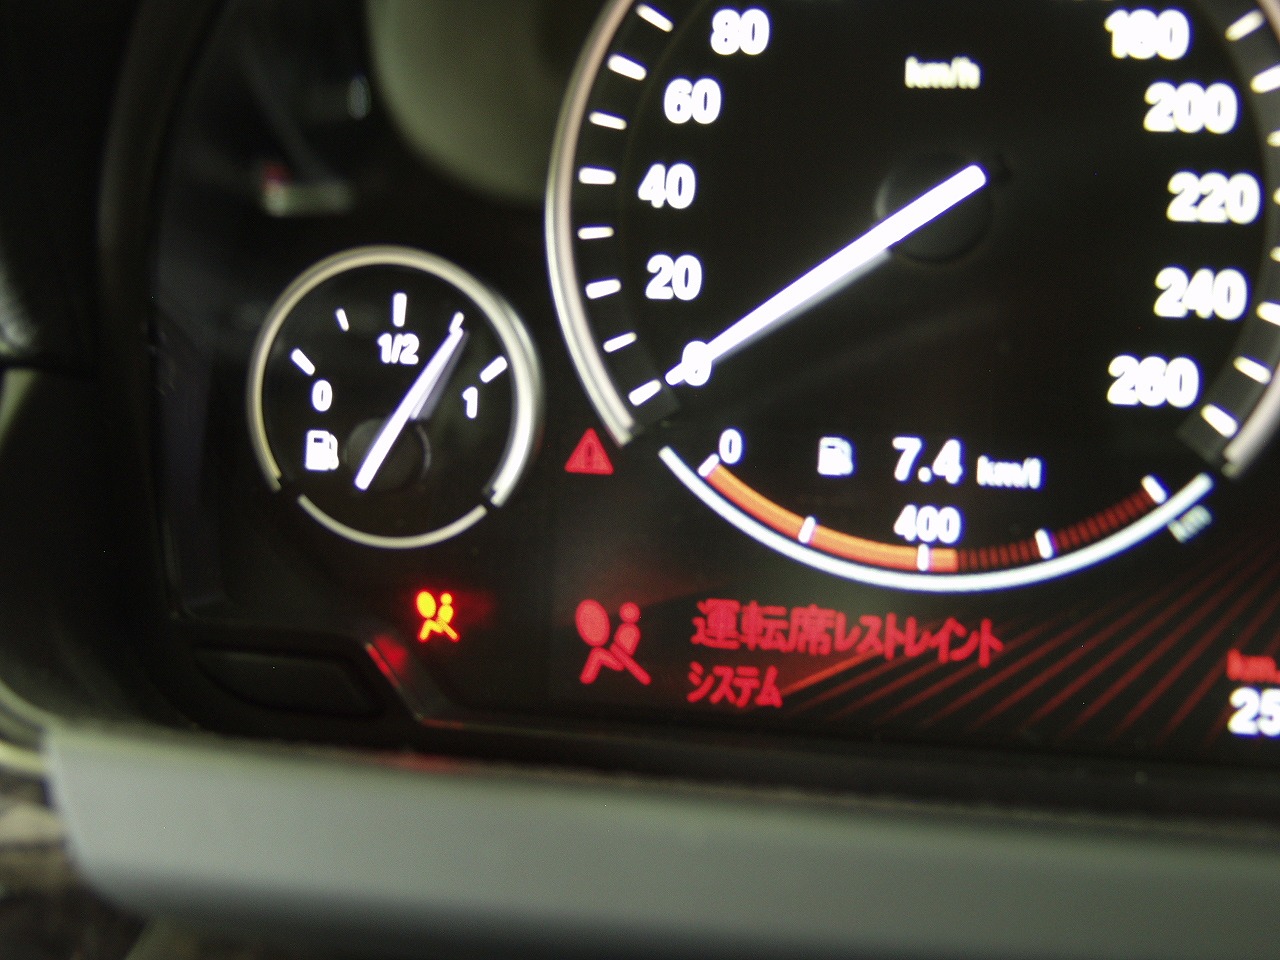 車検ng Bmw 640i F13 エアバッグ警告灯が点灯 車検 板金塗装 修理 中古車の格安店 アクセスモーターサービス